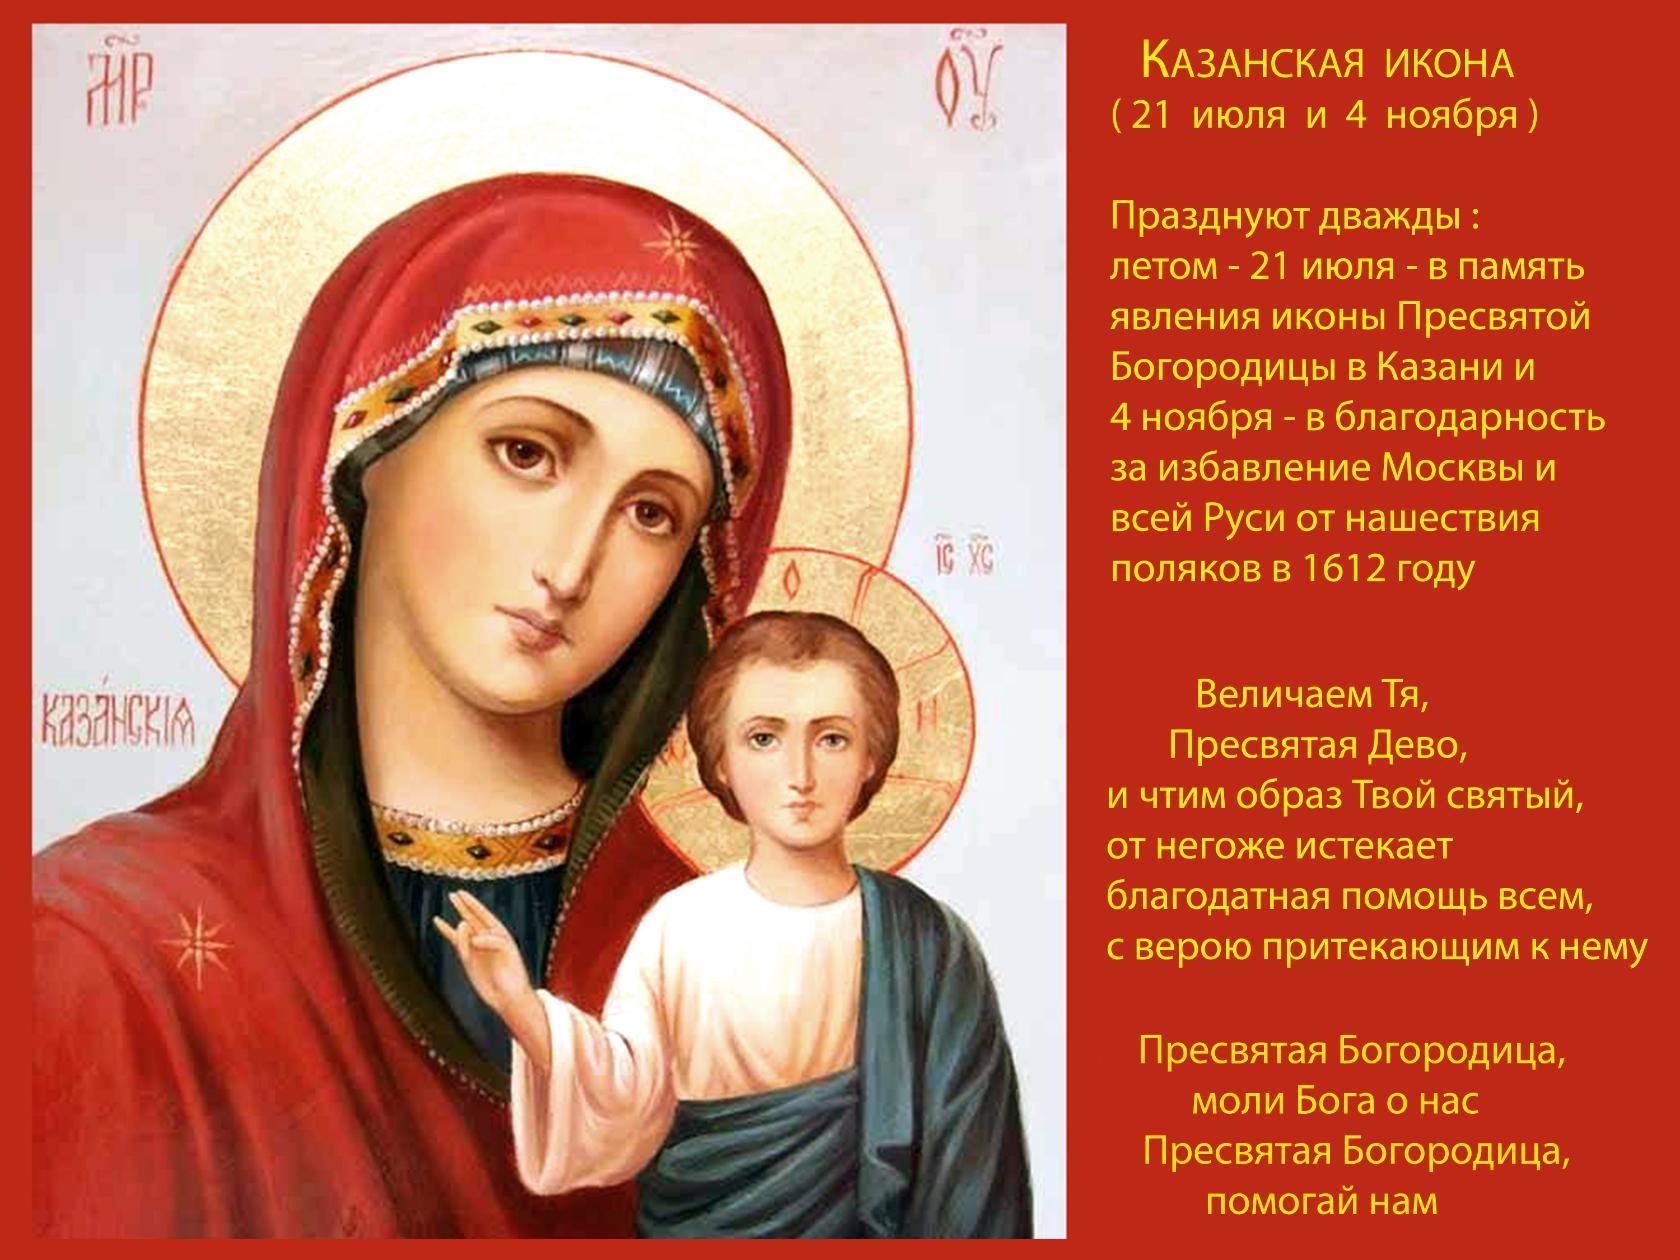 Казанская праздник Пресвятая Богородица моли Бога о нас